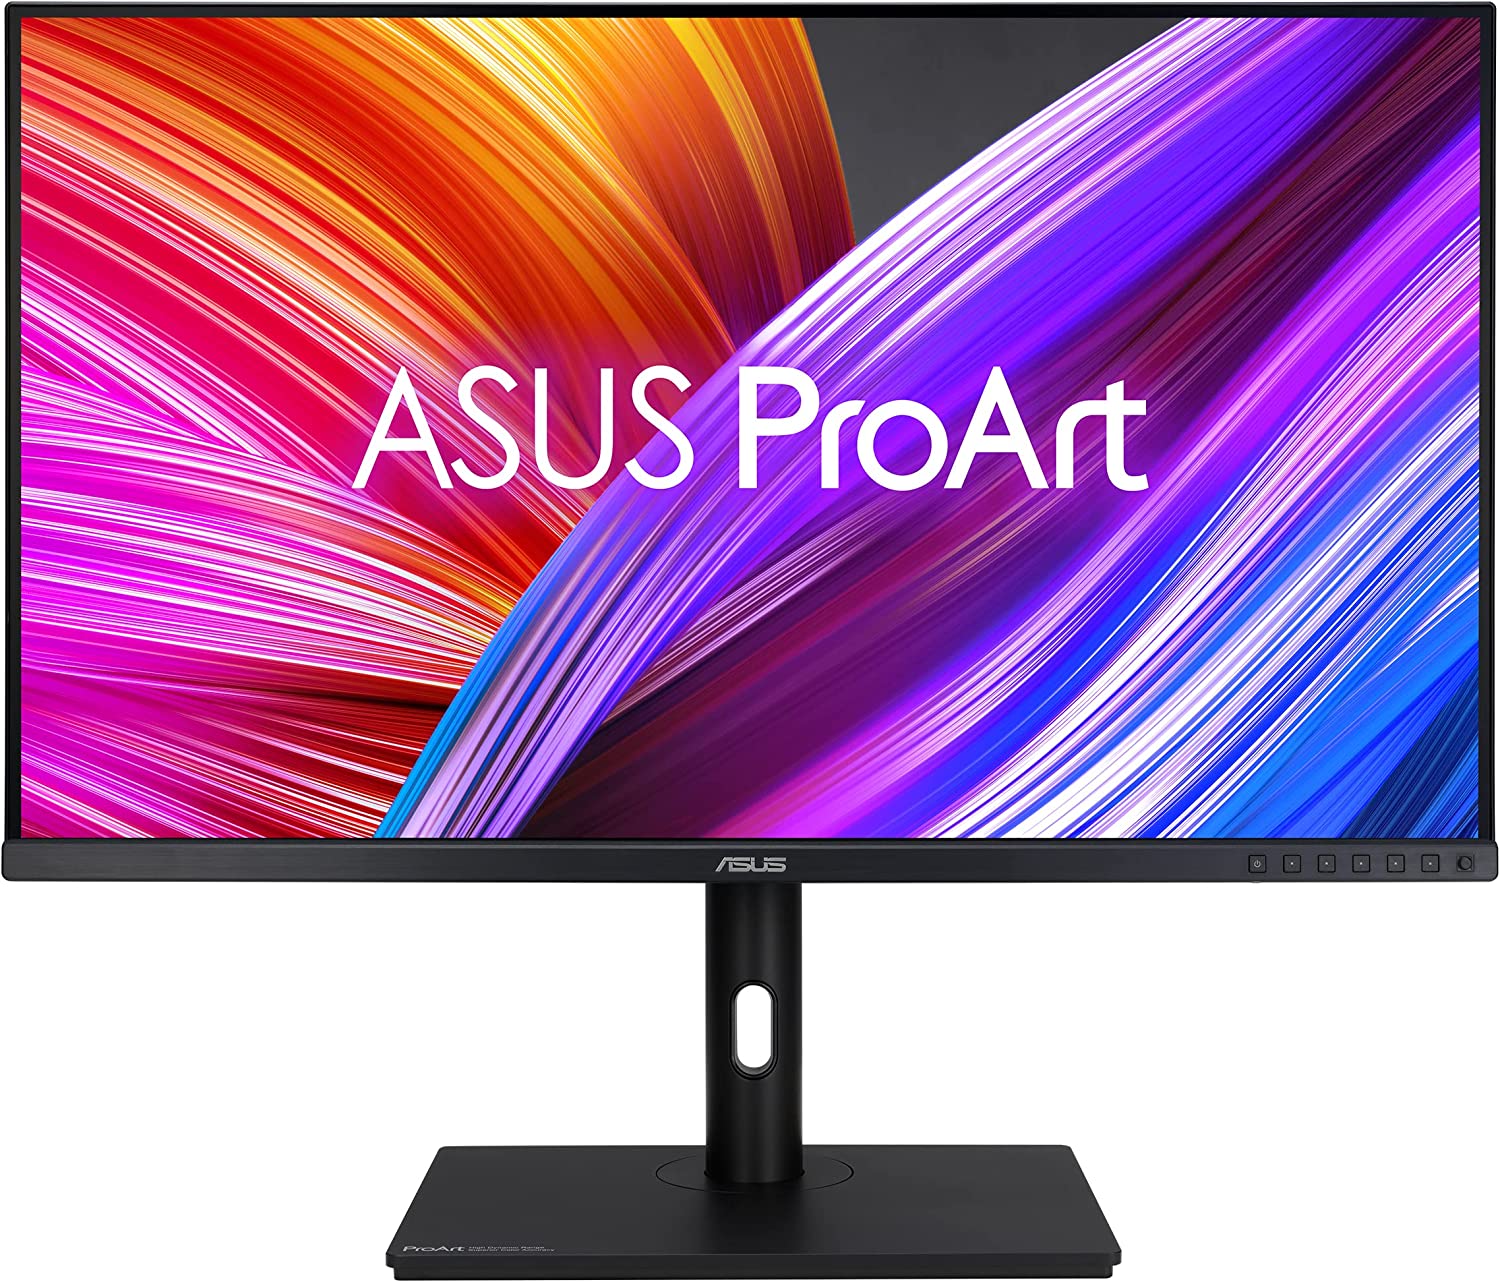 ASUS ProArt Display 31.5” 1440P Monitor (PA328QV) – [...]